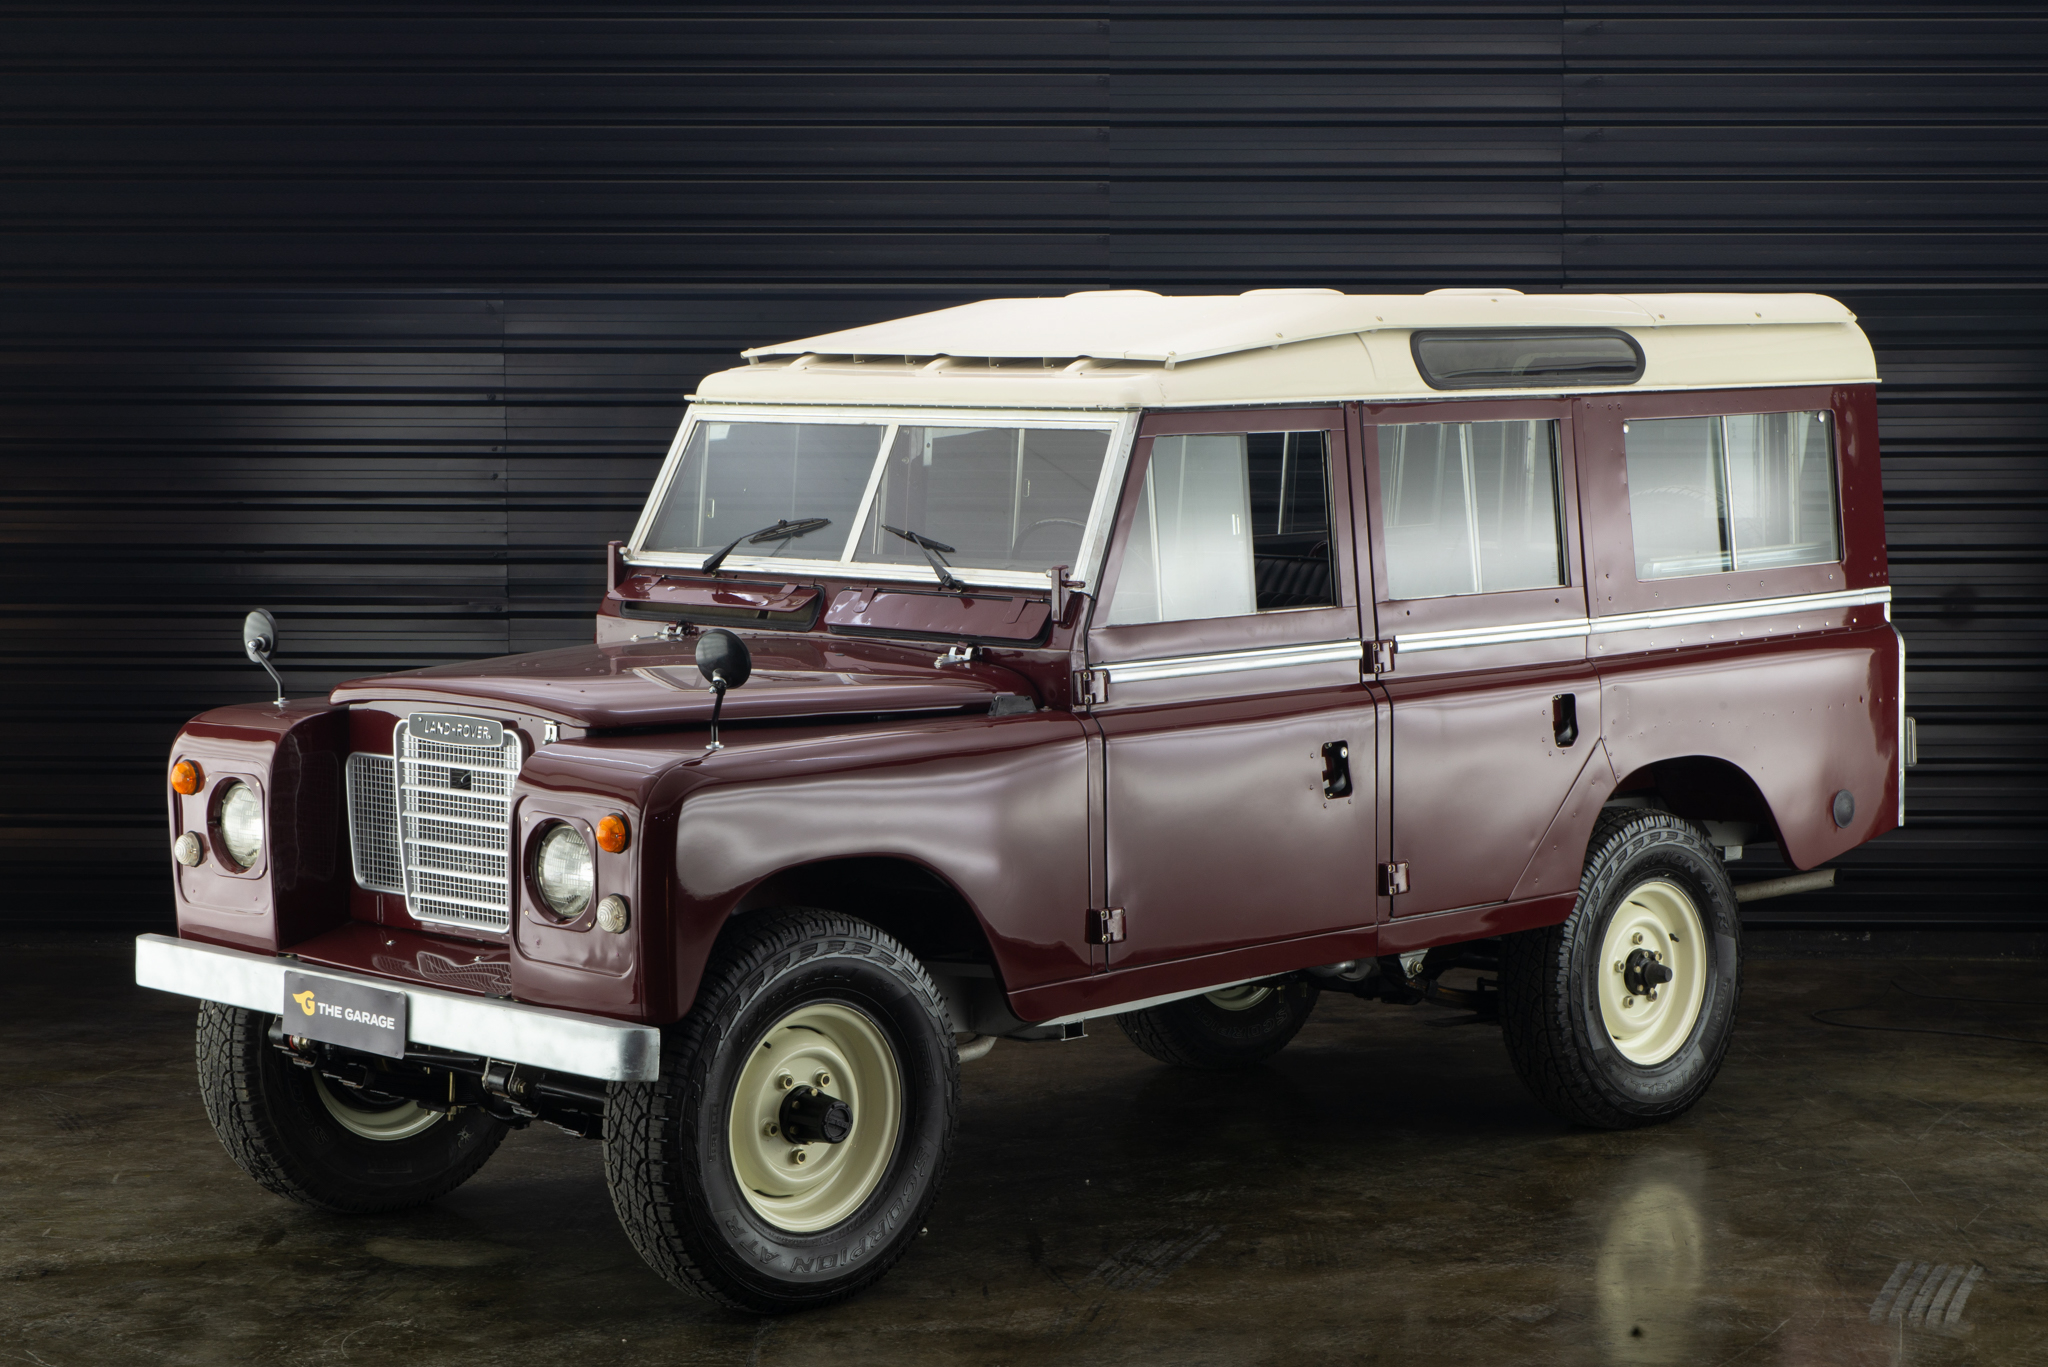 1974 Land Rover série iii a venda the garage